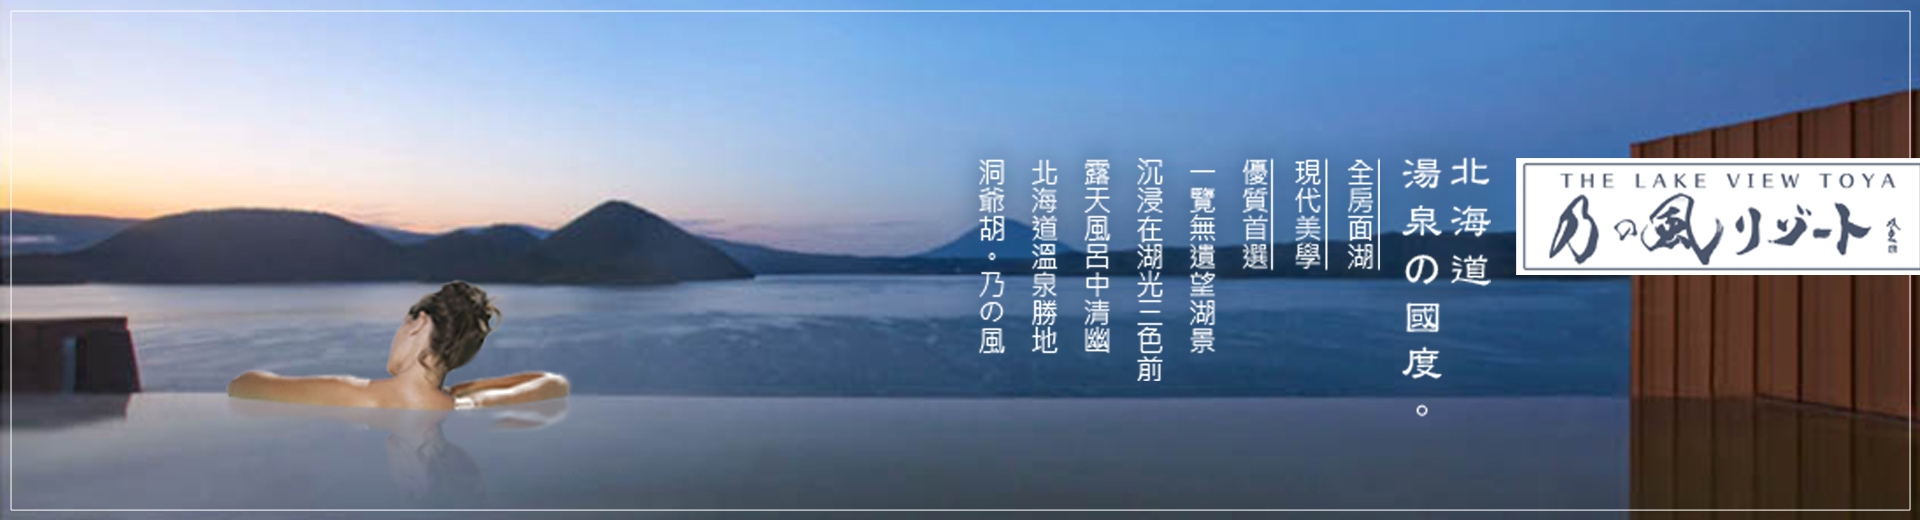 北海道旅遊推薦-乃之風溫泉旅館